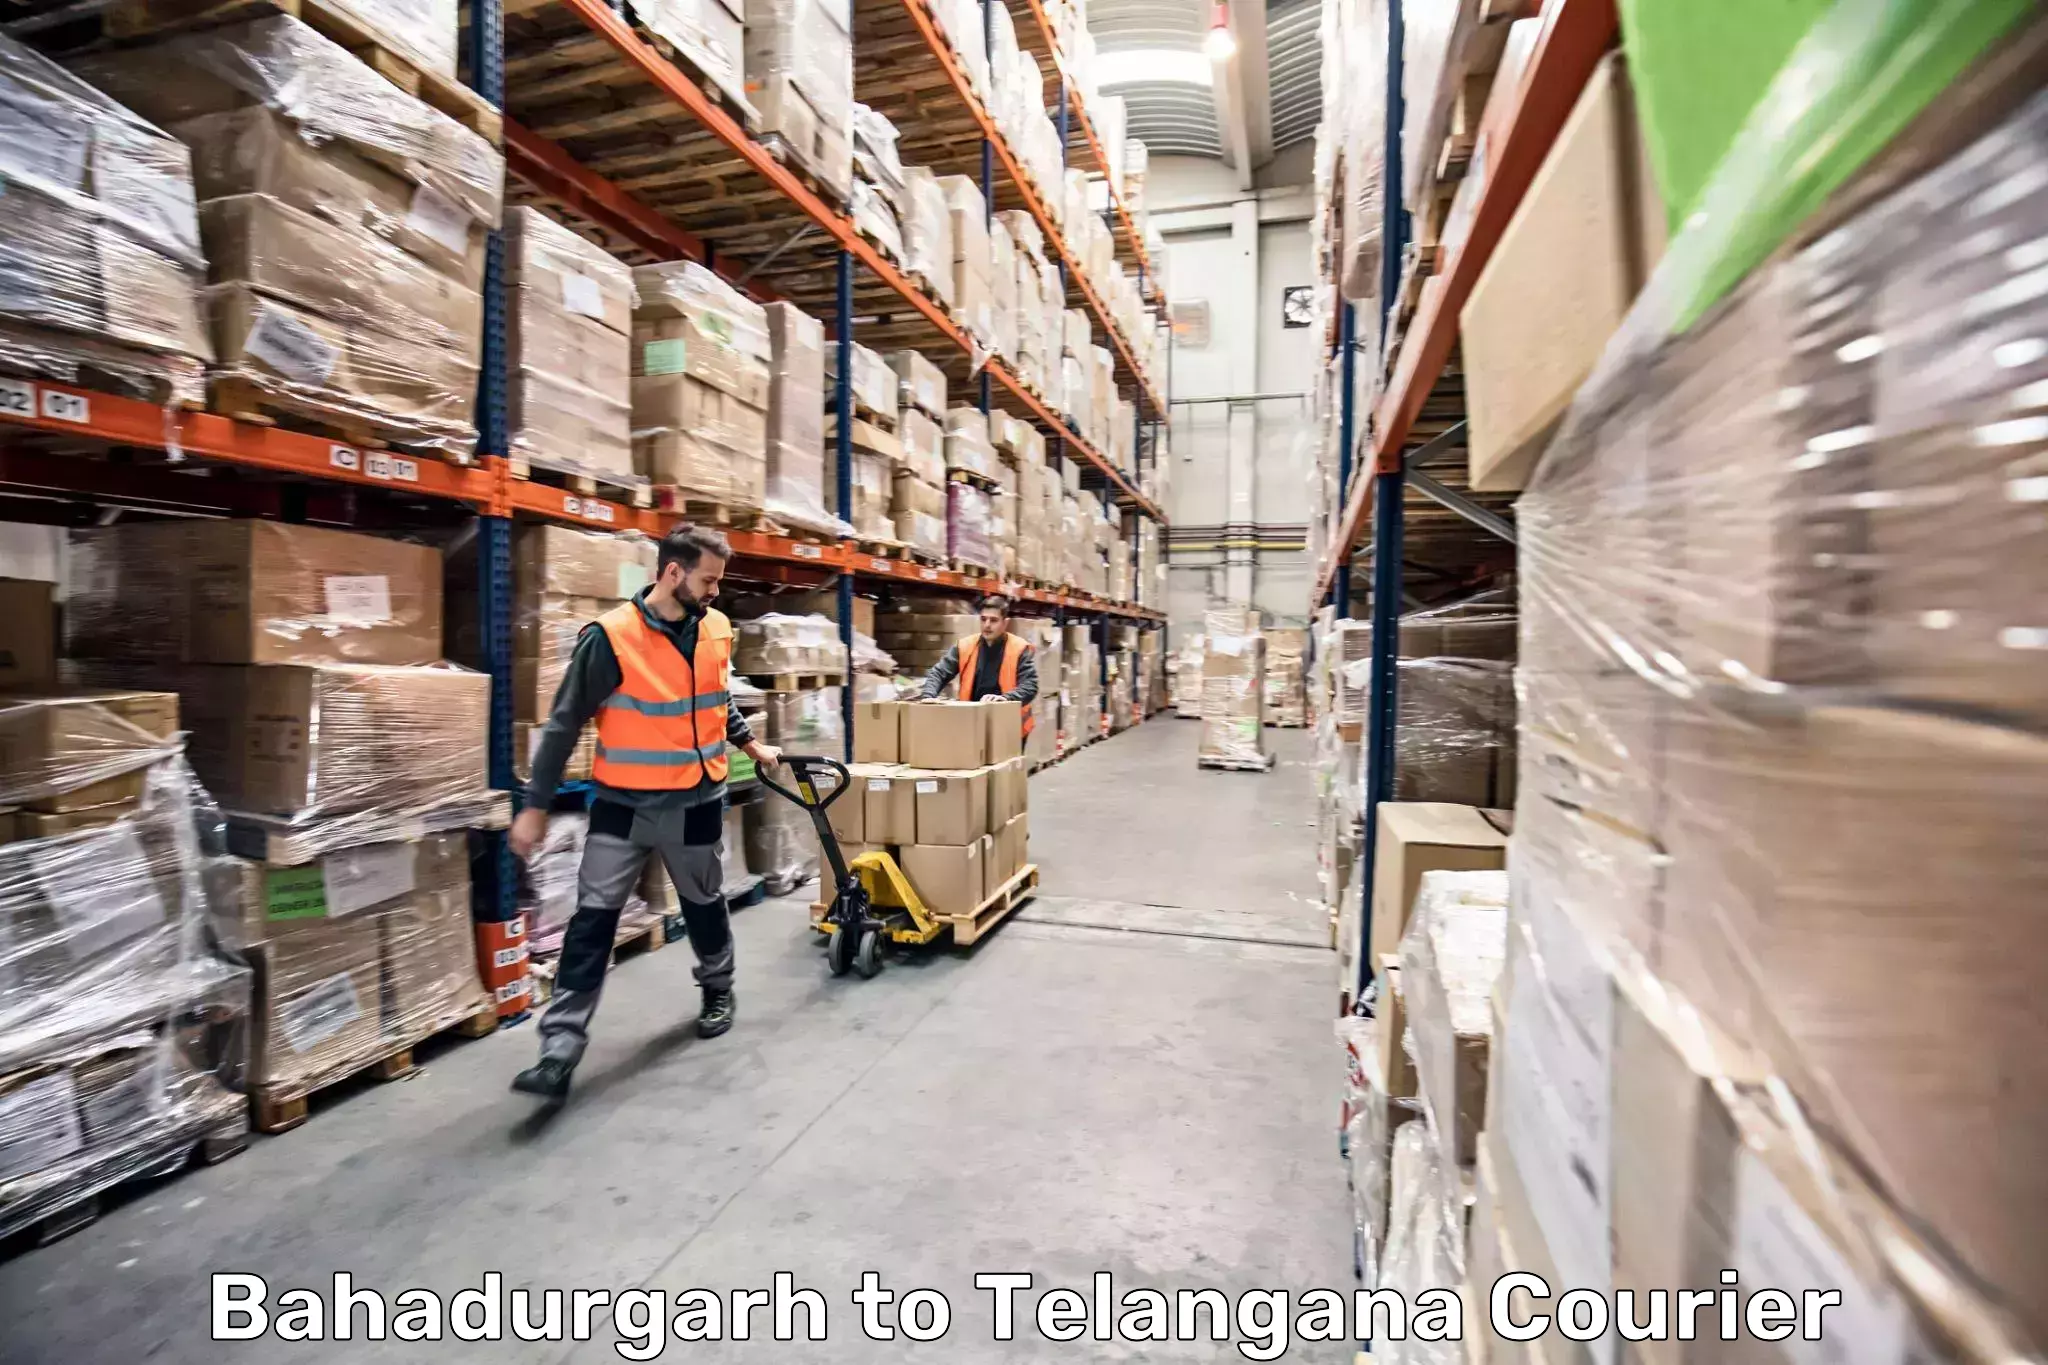 Luggage shipment processing Bahadurgarh to Bejjanki